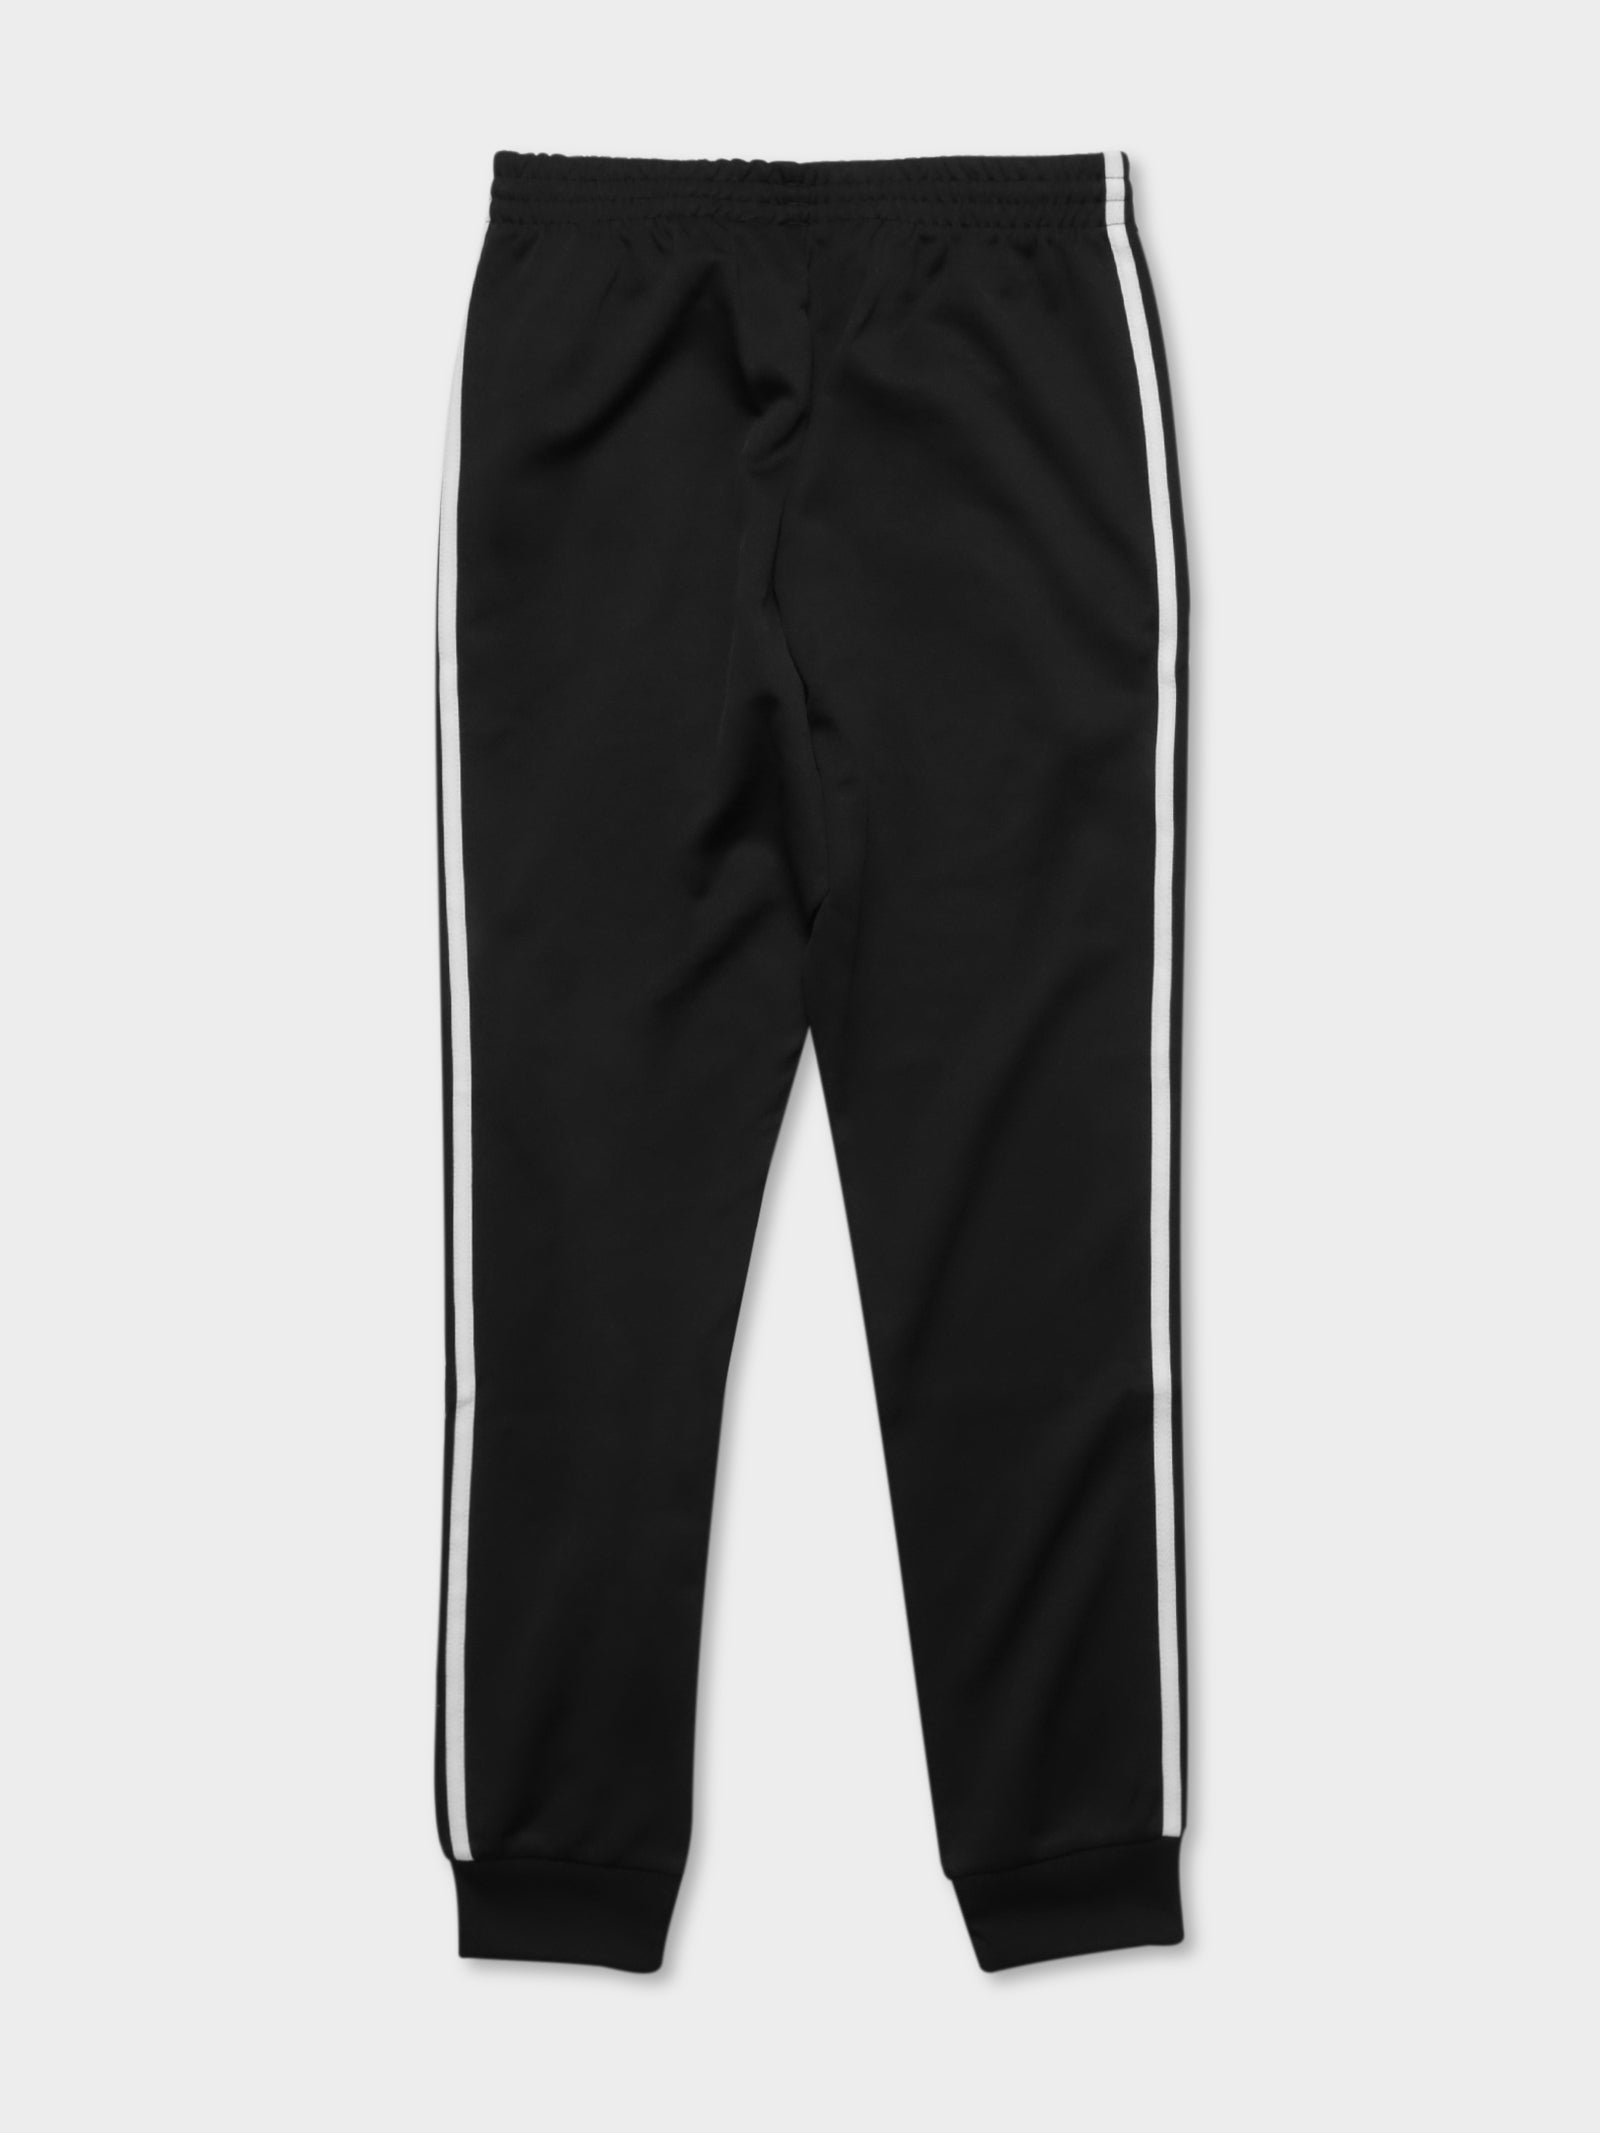 adidas Originals SST Men's Track Pants Black GF0210